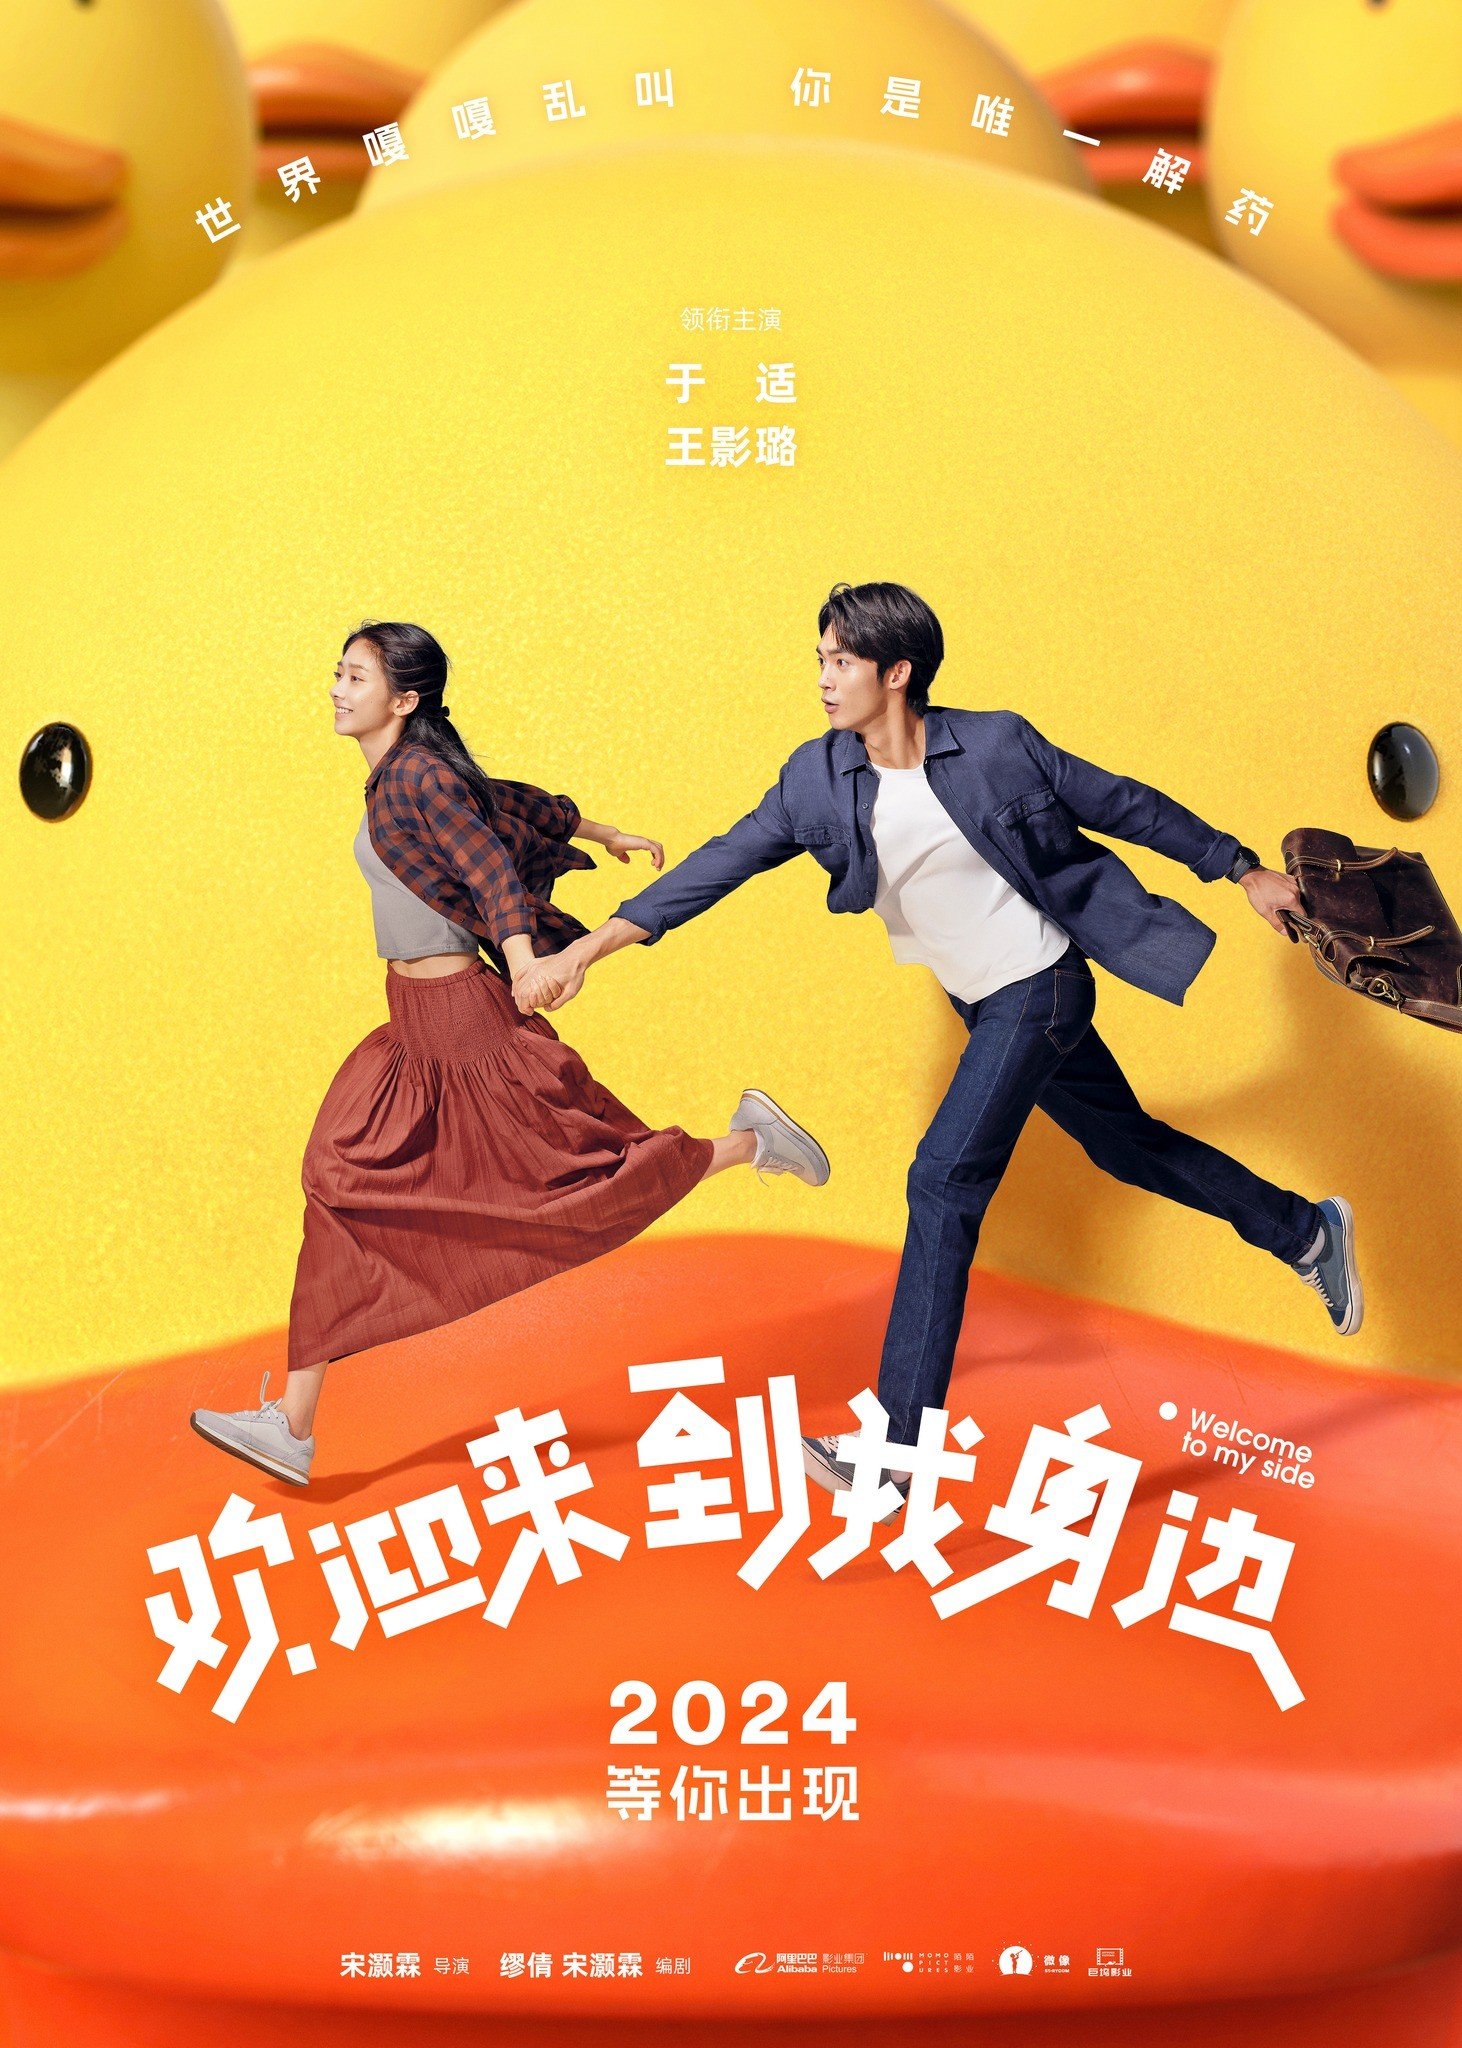 Phim điện ảnh 'Chào Mừng Em Đến Bên Tôi' do Vu Thích và Vương Ảnh Lộ đóng chính tung poster nhân ngày đóng máy. Bộ phim dự kiến lên rạp trong năm 2024.